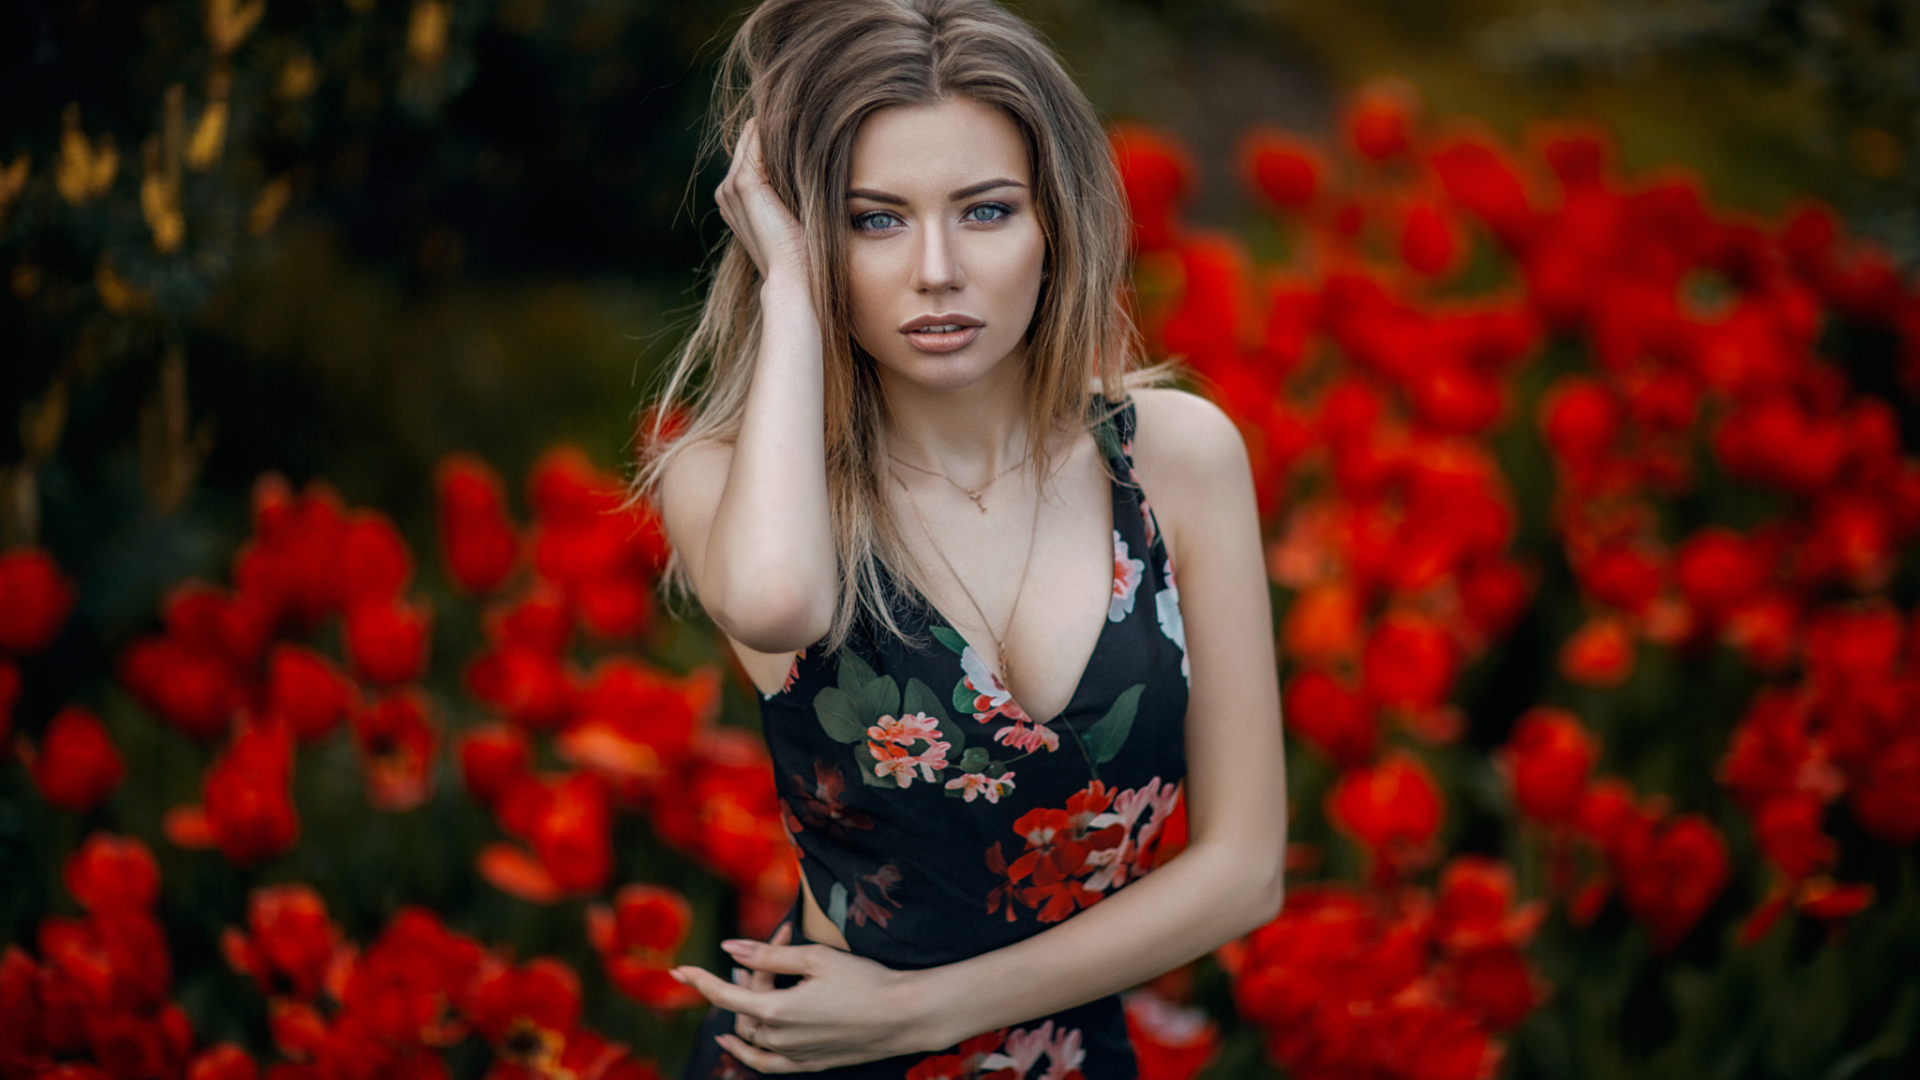 Красивая молодая девушка позирует на фоне красных тюльпанов